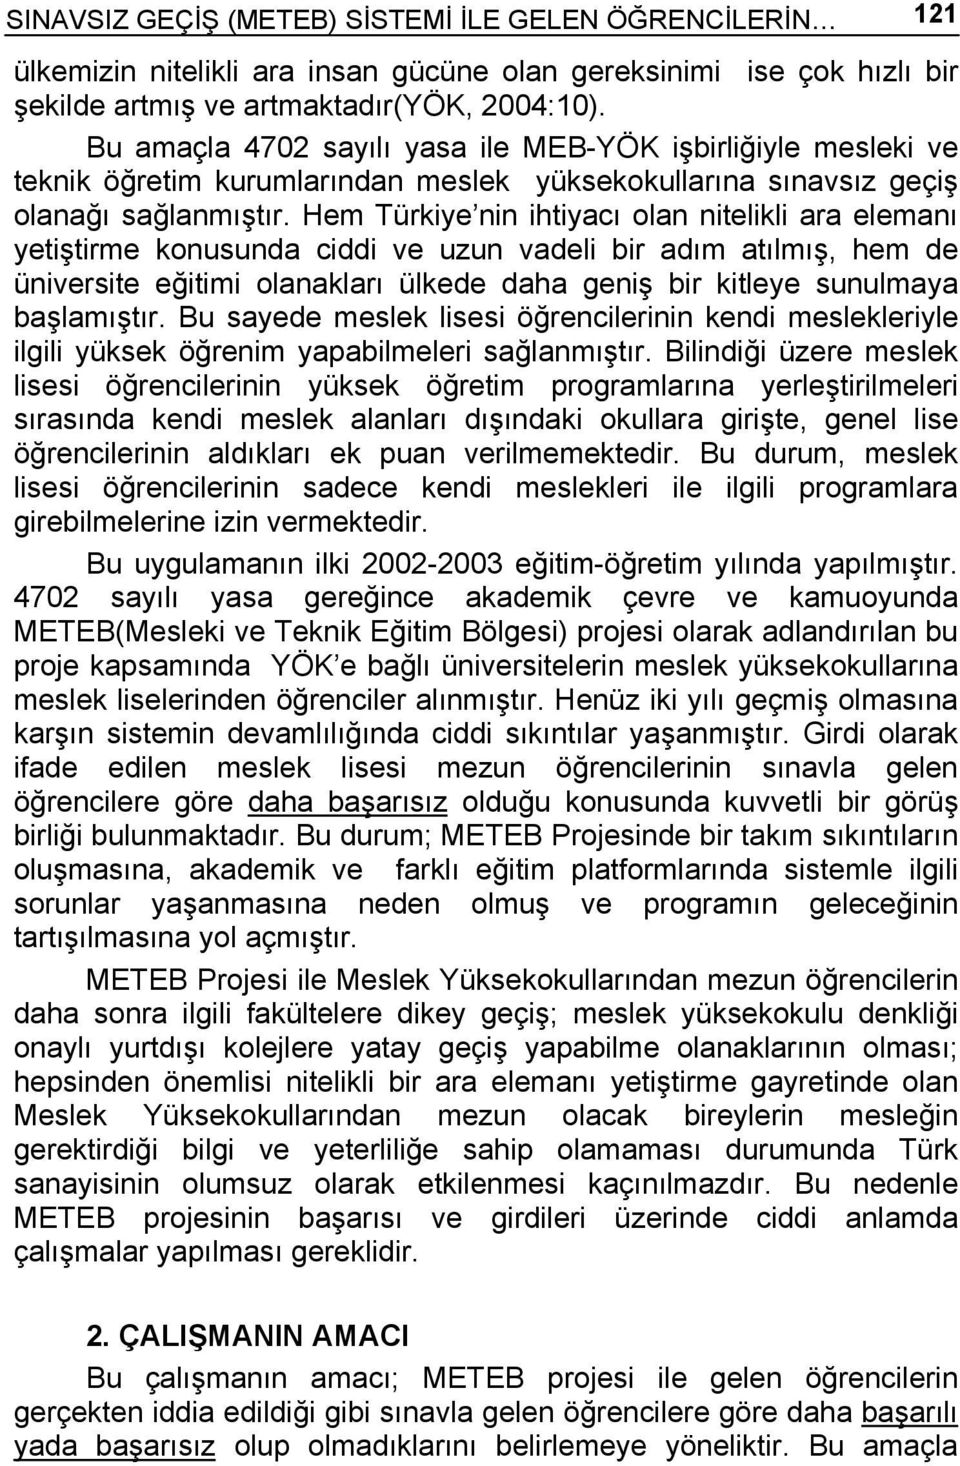 Hem Türkiye nin ihtiyacı olan nitelikli ara elemanı yetiştirme konusunda ciddi ve uzun vadeli bir adım atılmış, hem de üniversite eğitimi olanakları ülkede daha geniş bir kitleye sunulmaya